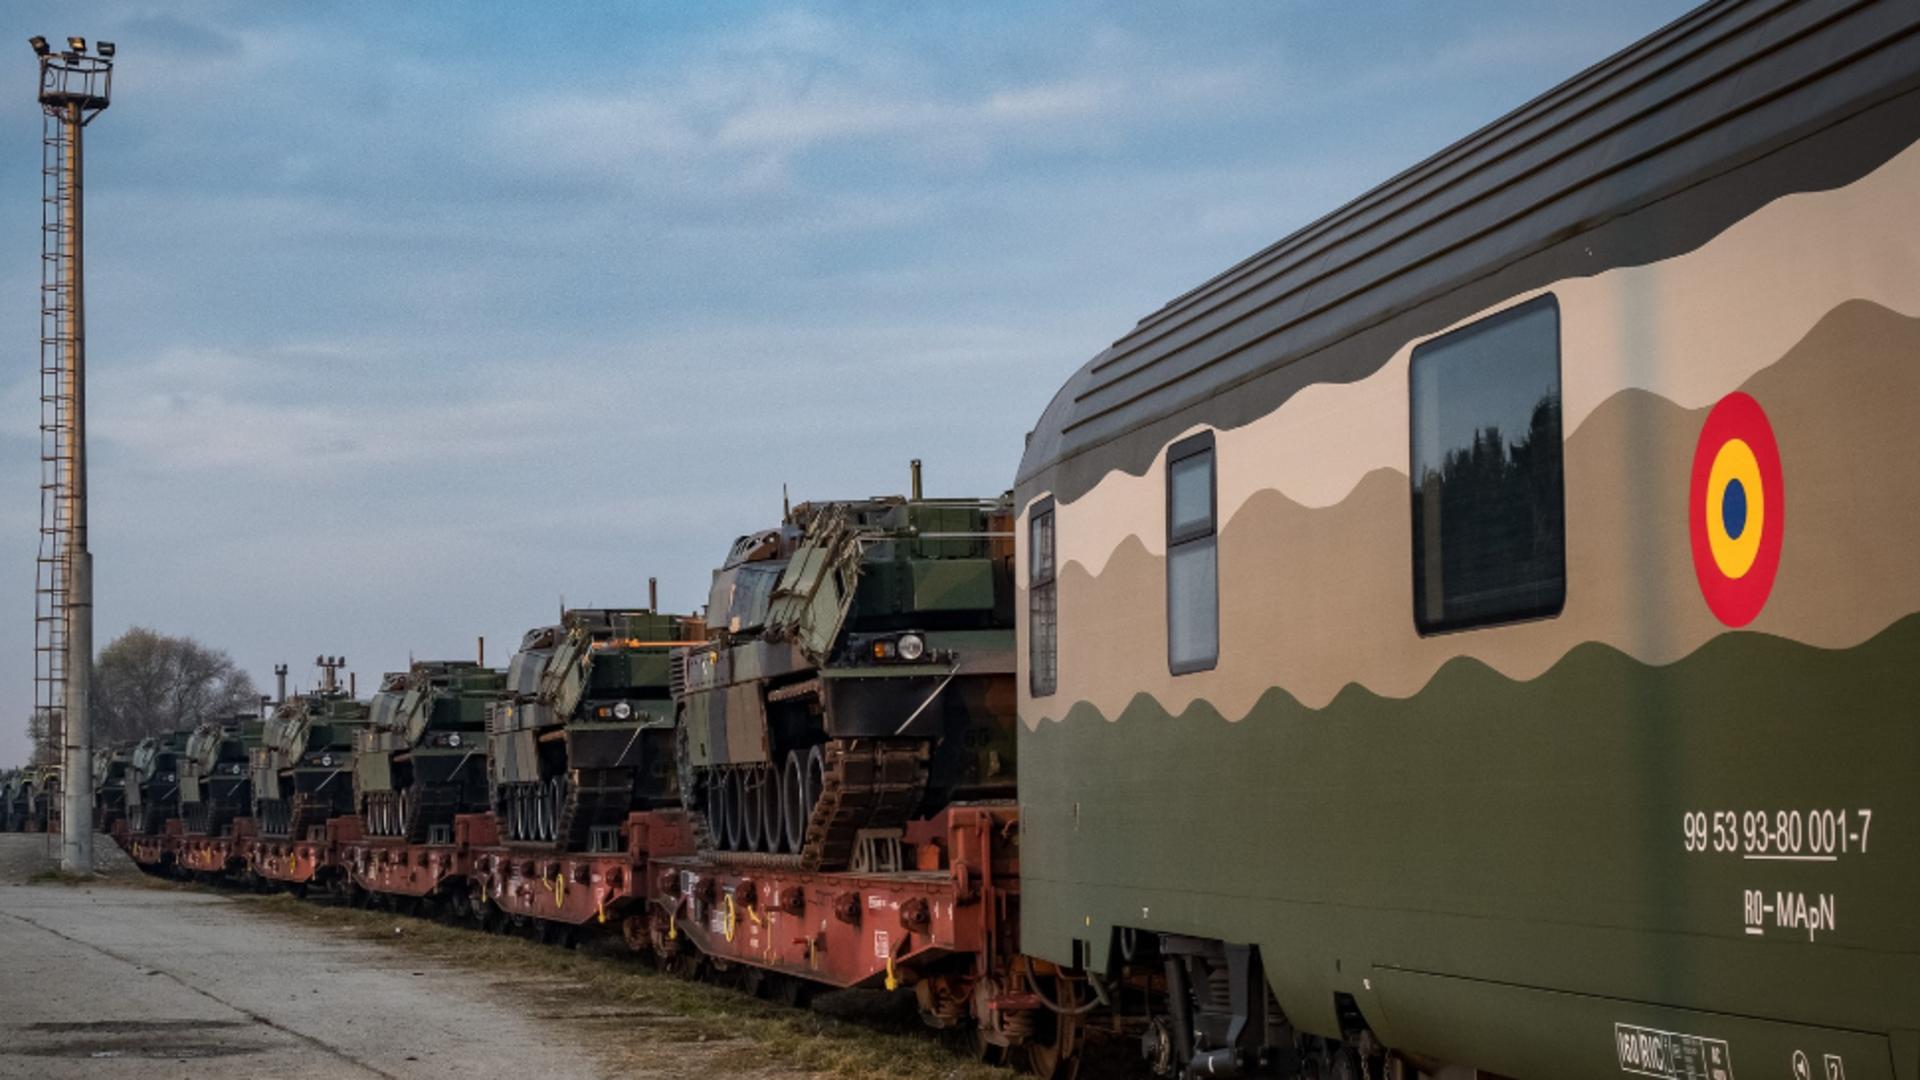 Tancurile franceze Leclerc au ajuns în România! Grupul de luptă al NATO își întărește prezența în țara noastră